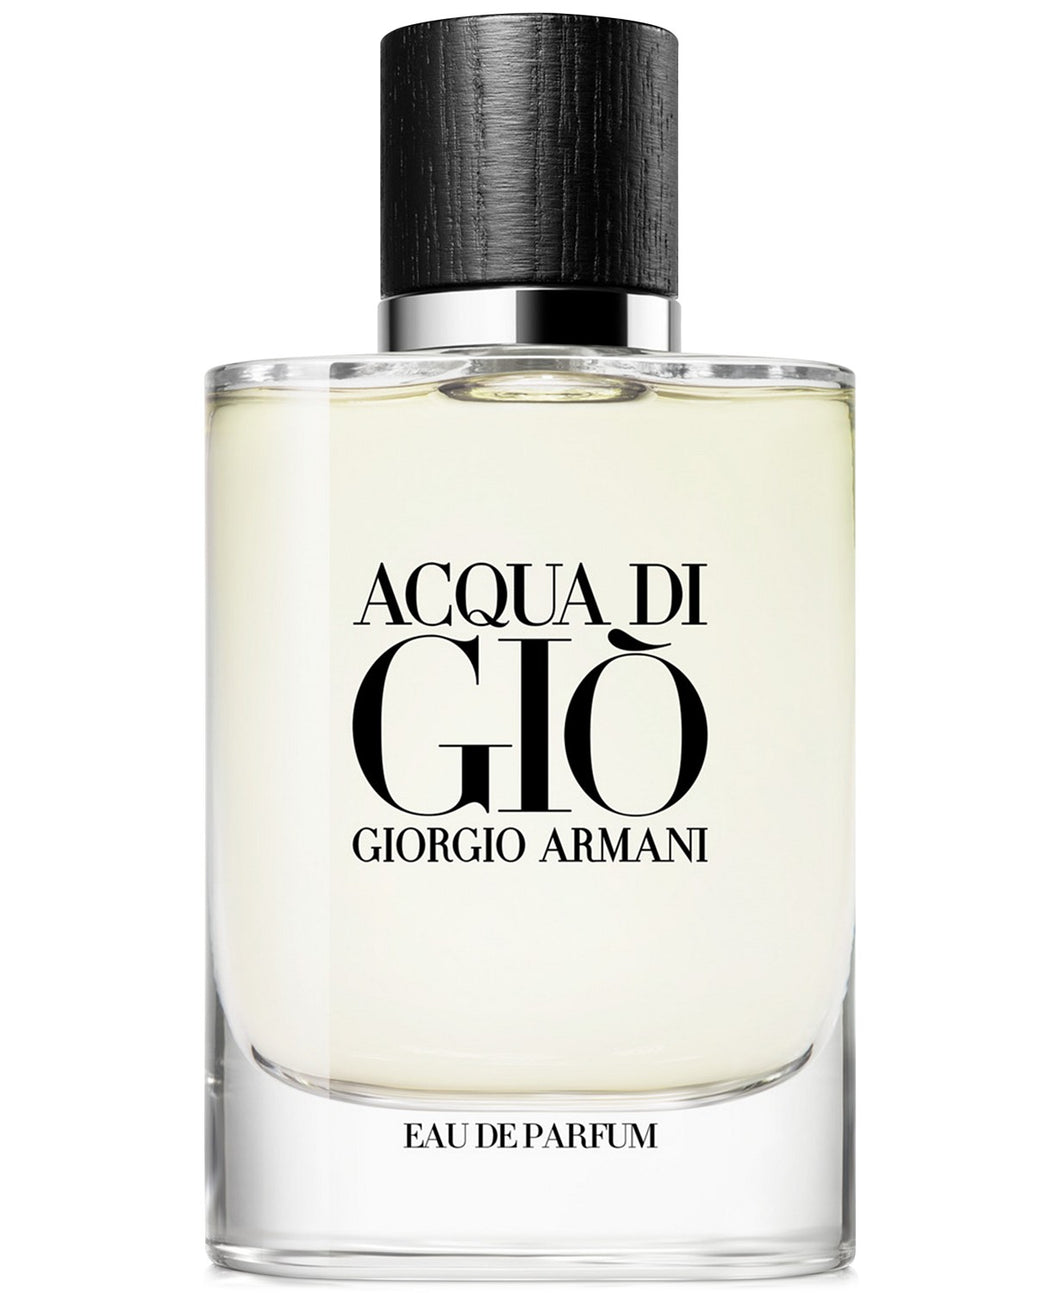 giorgio armani acqua di gio eau de parfum 2.5oz for mens - alwaysspecialgifts.com